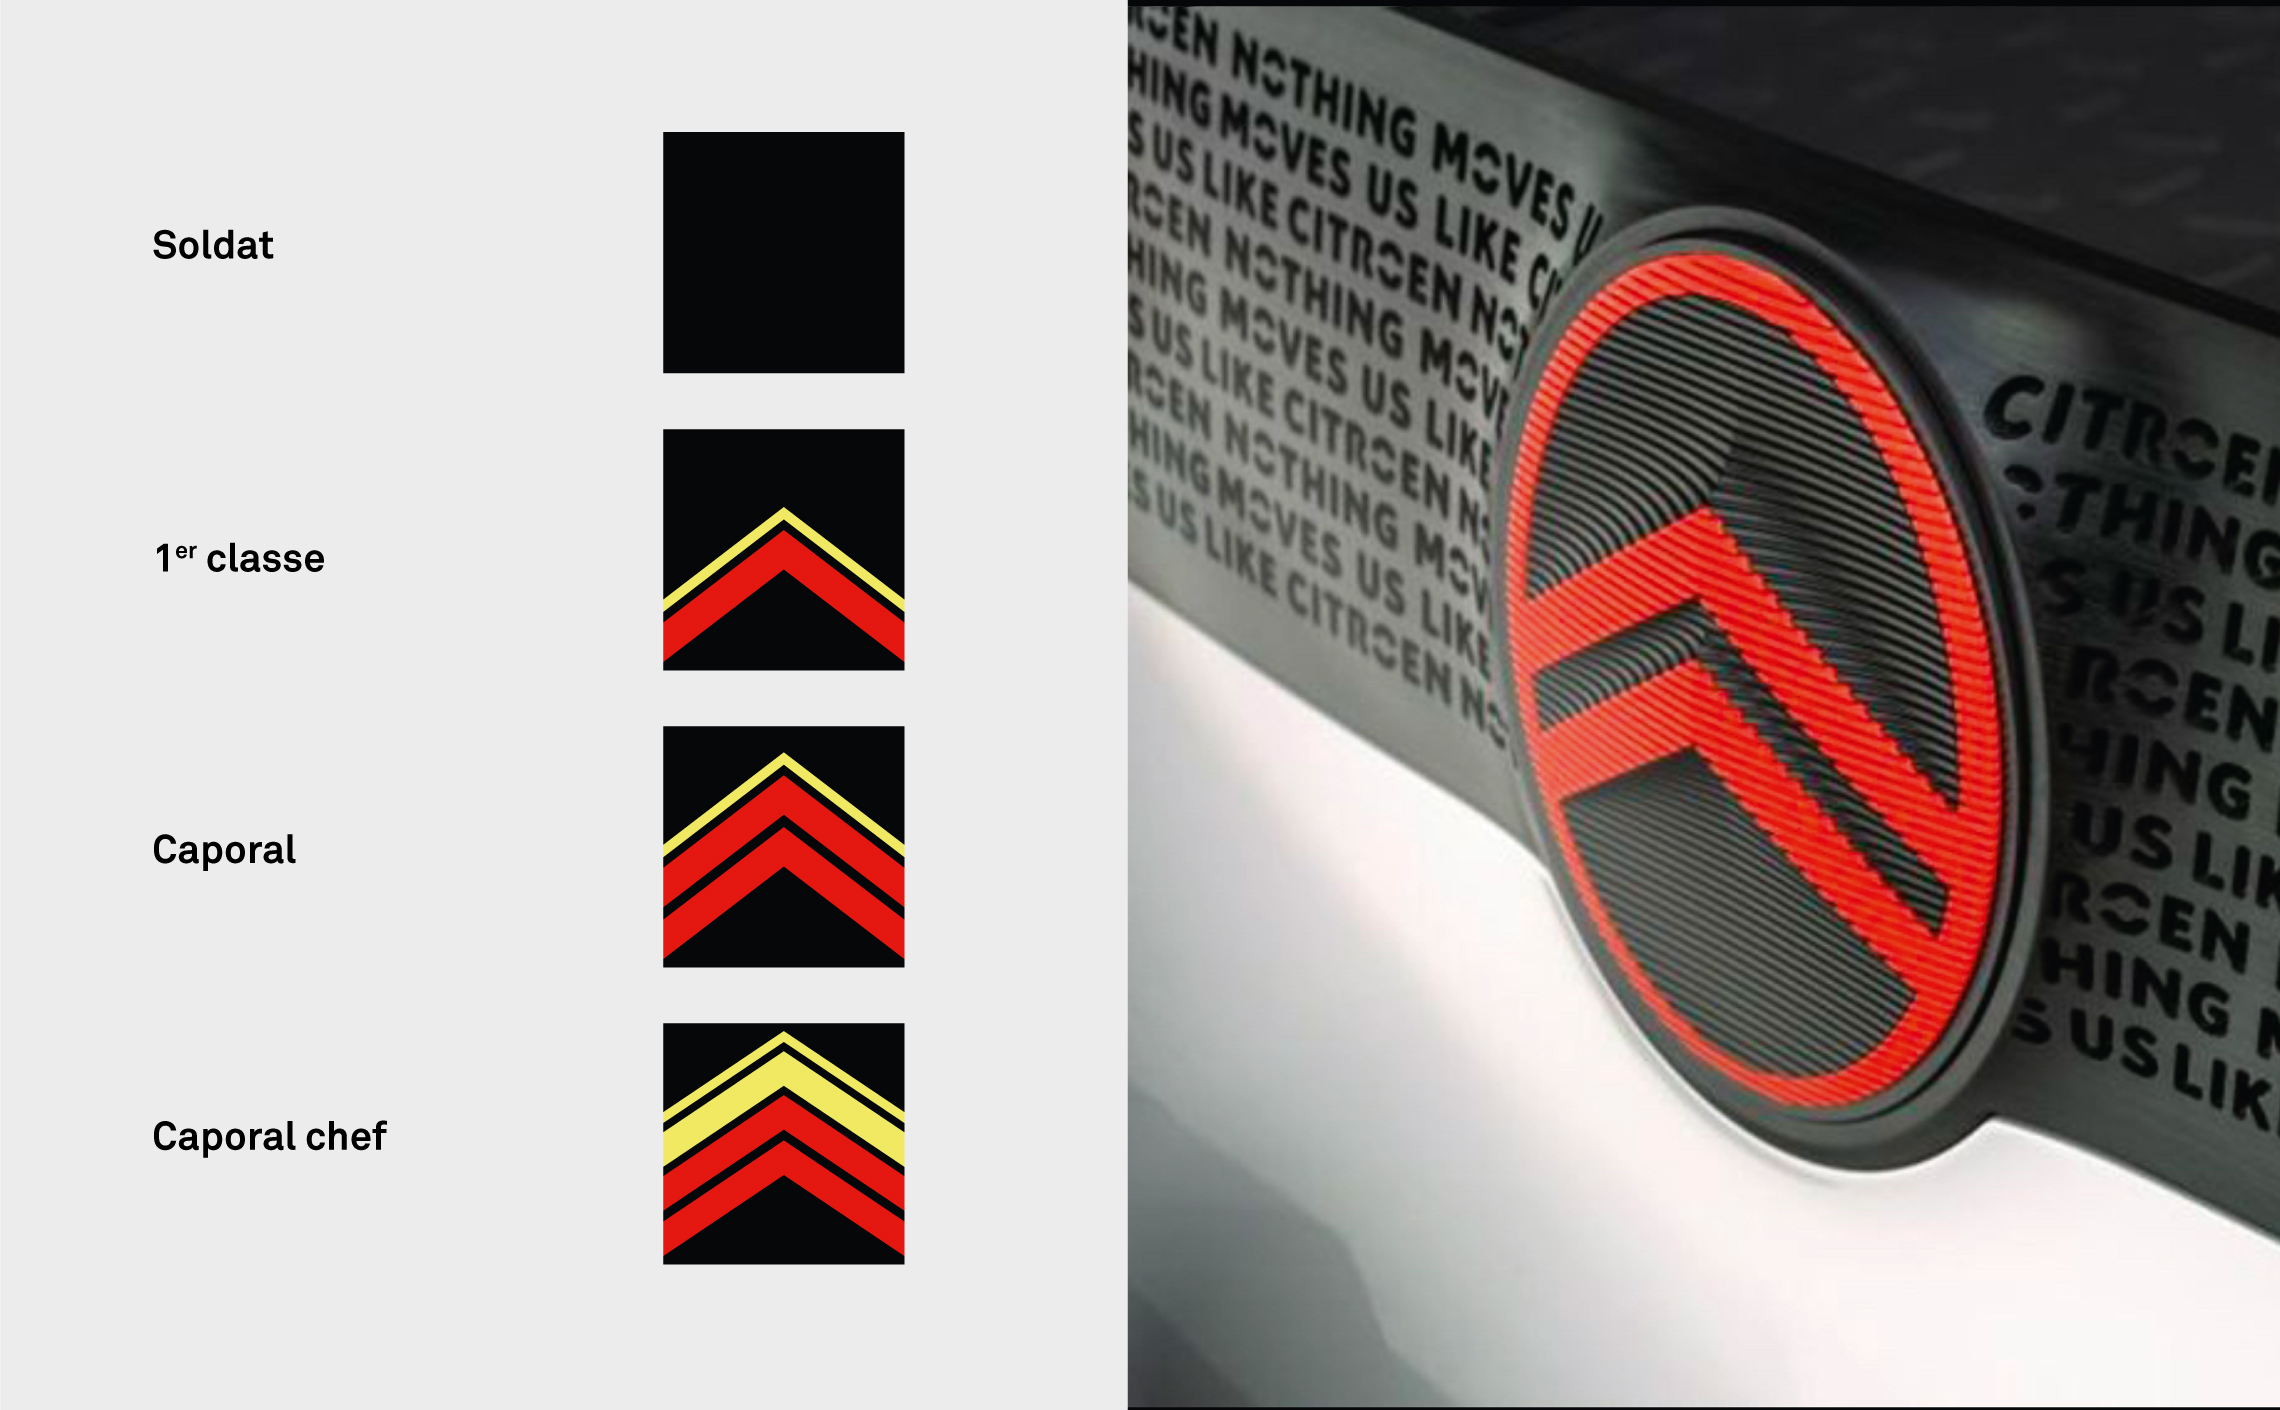 Citroen reveals new logo for future models